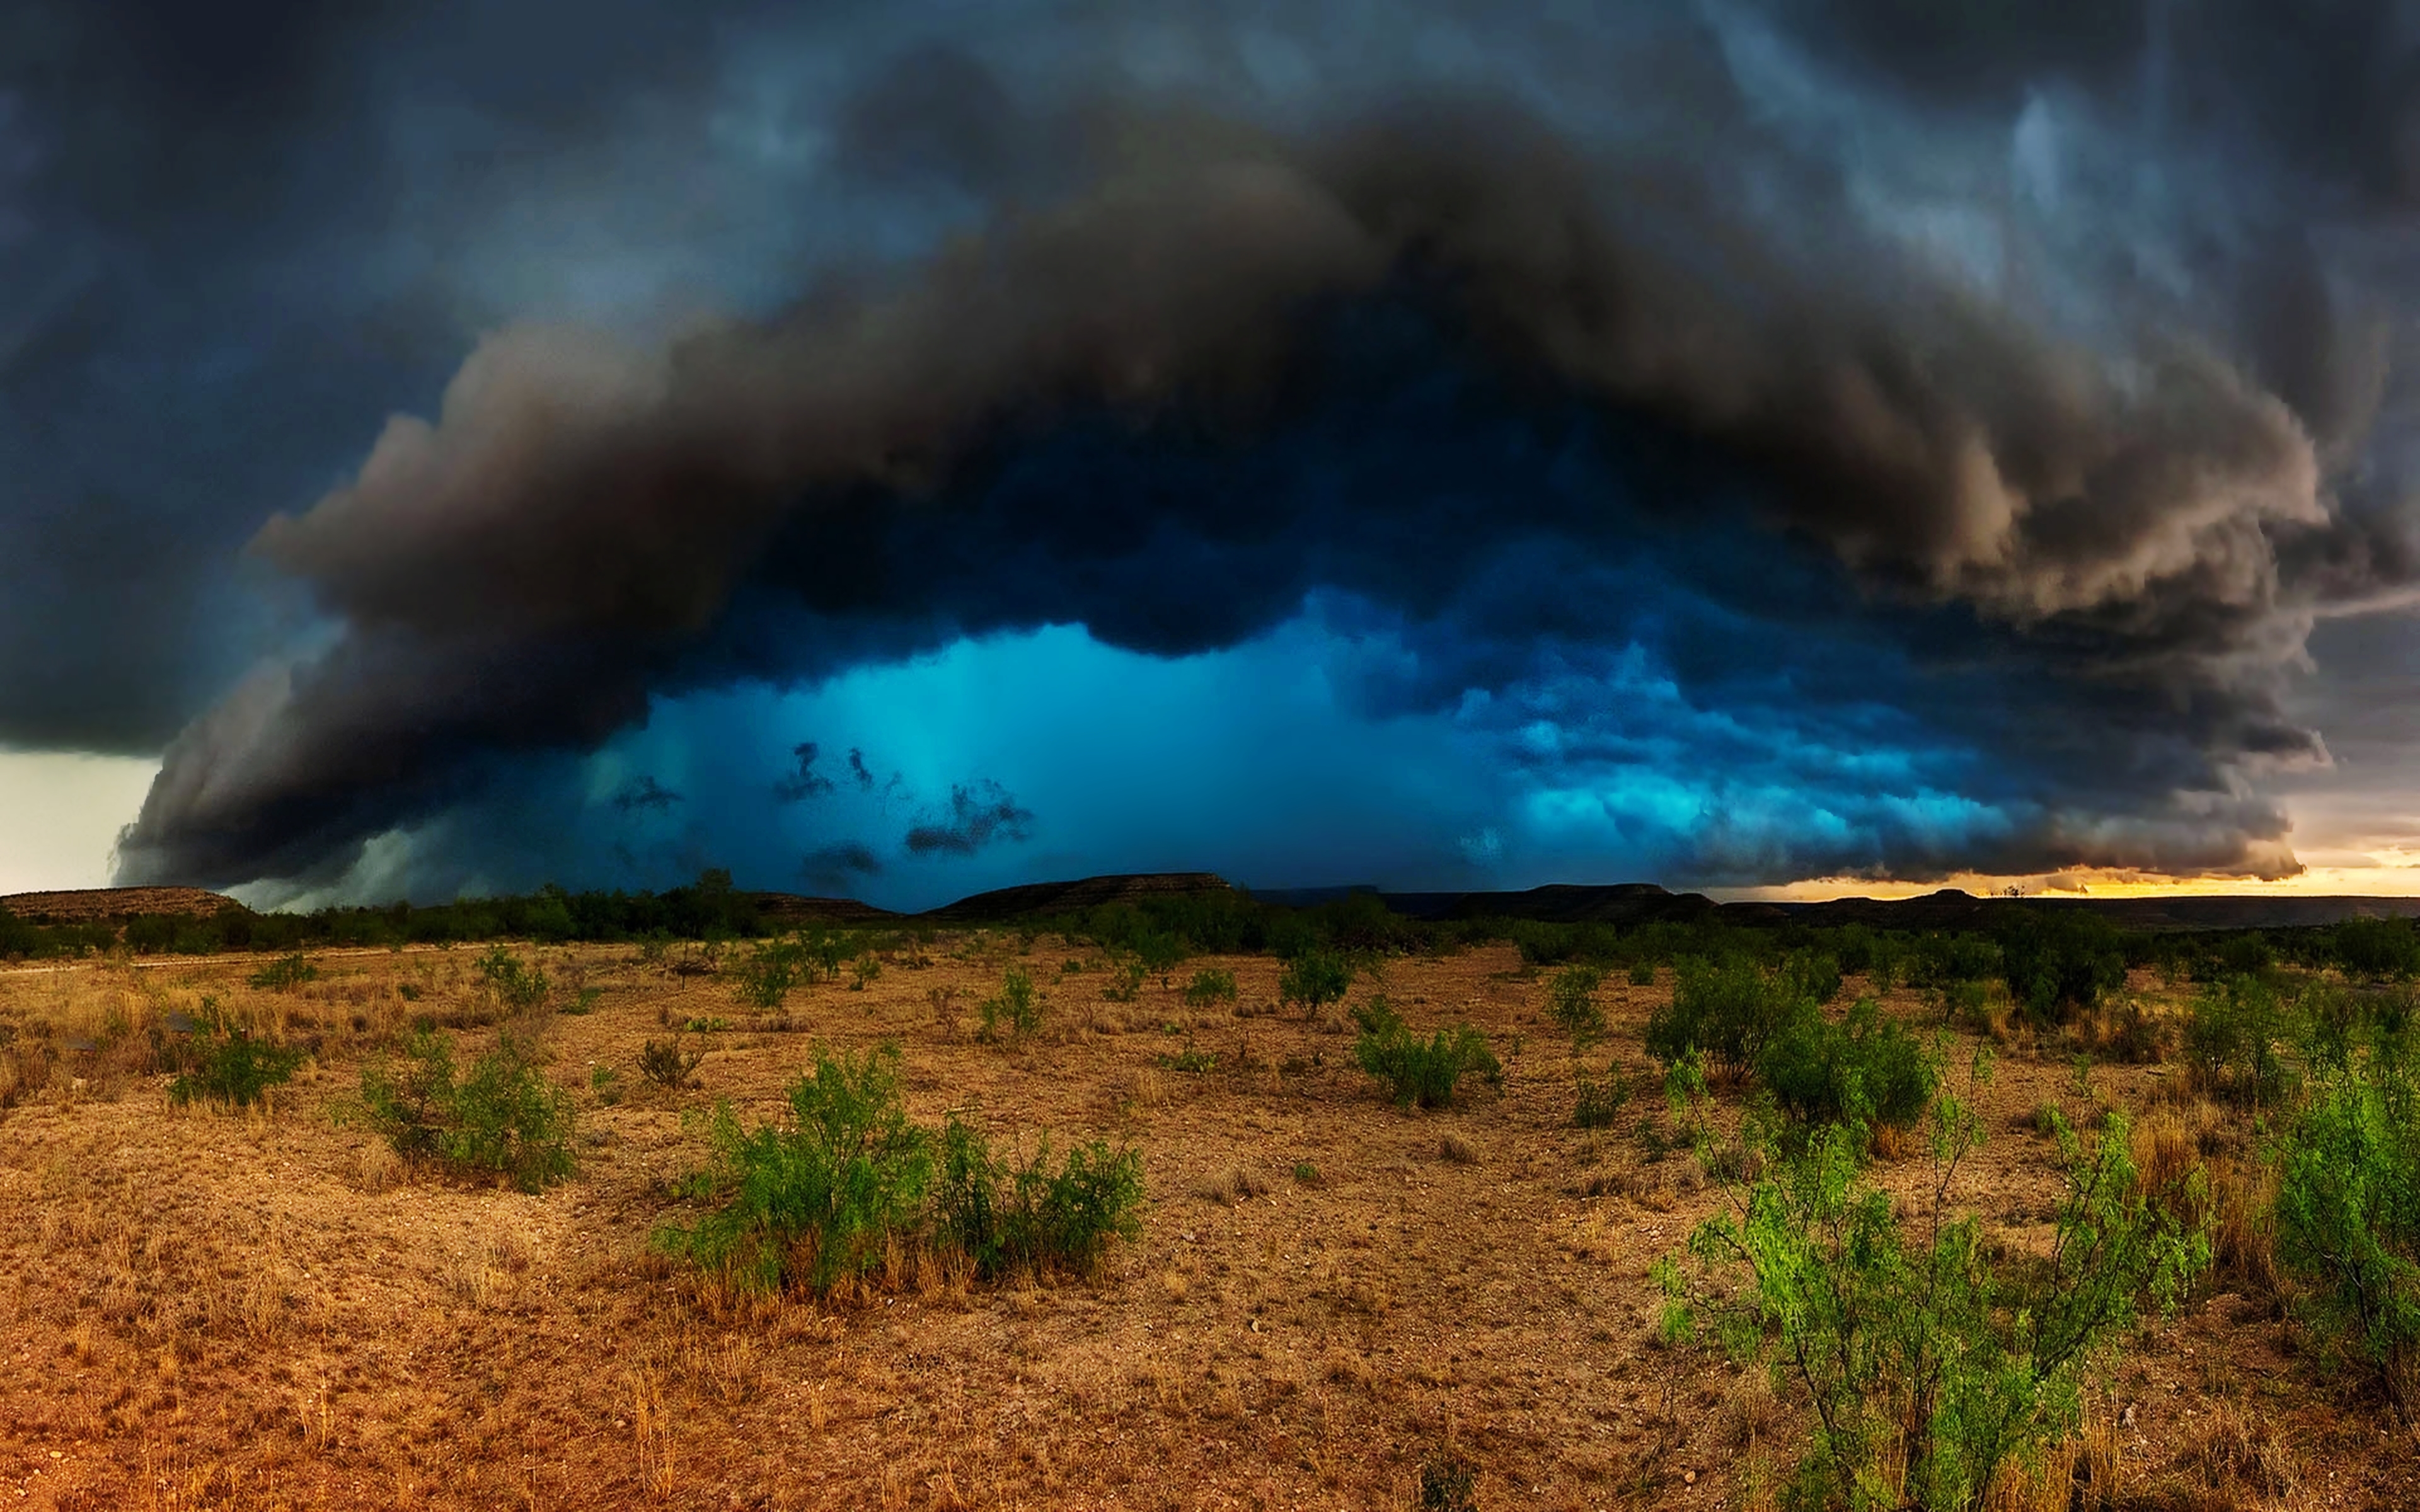 Thunder Storm by Matt Granz